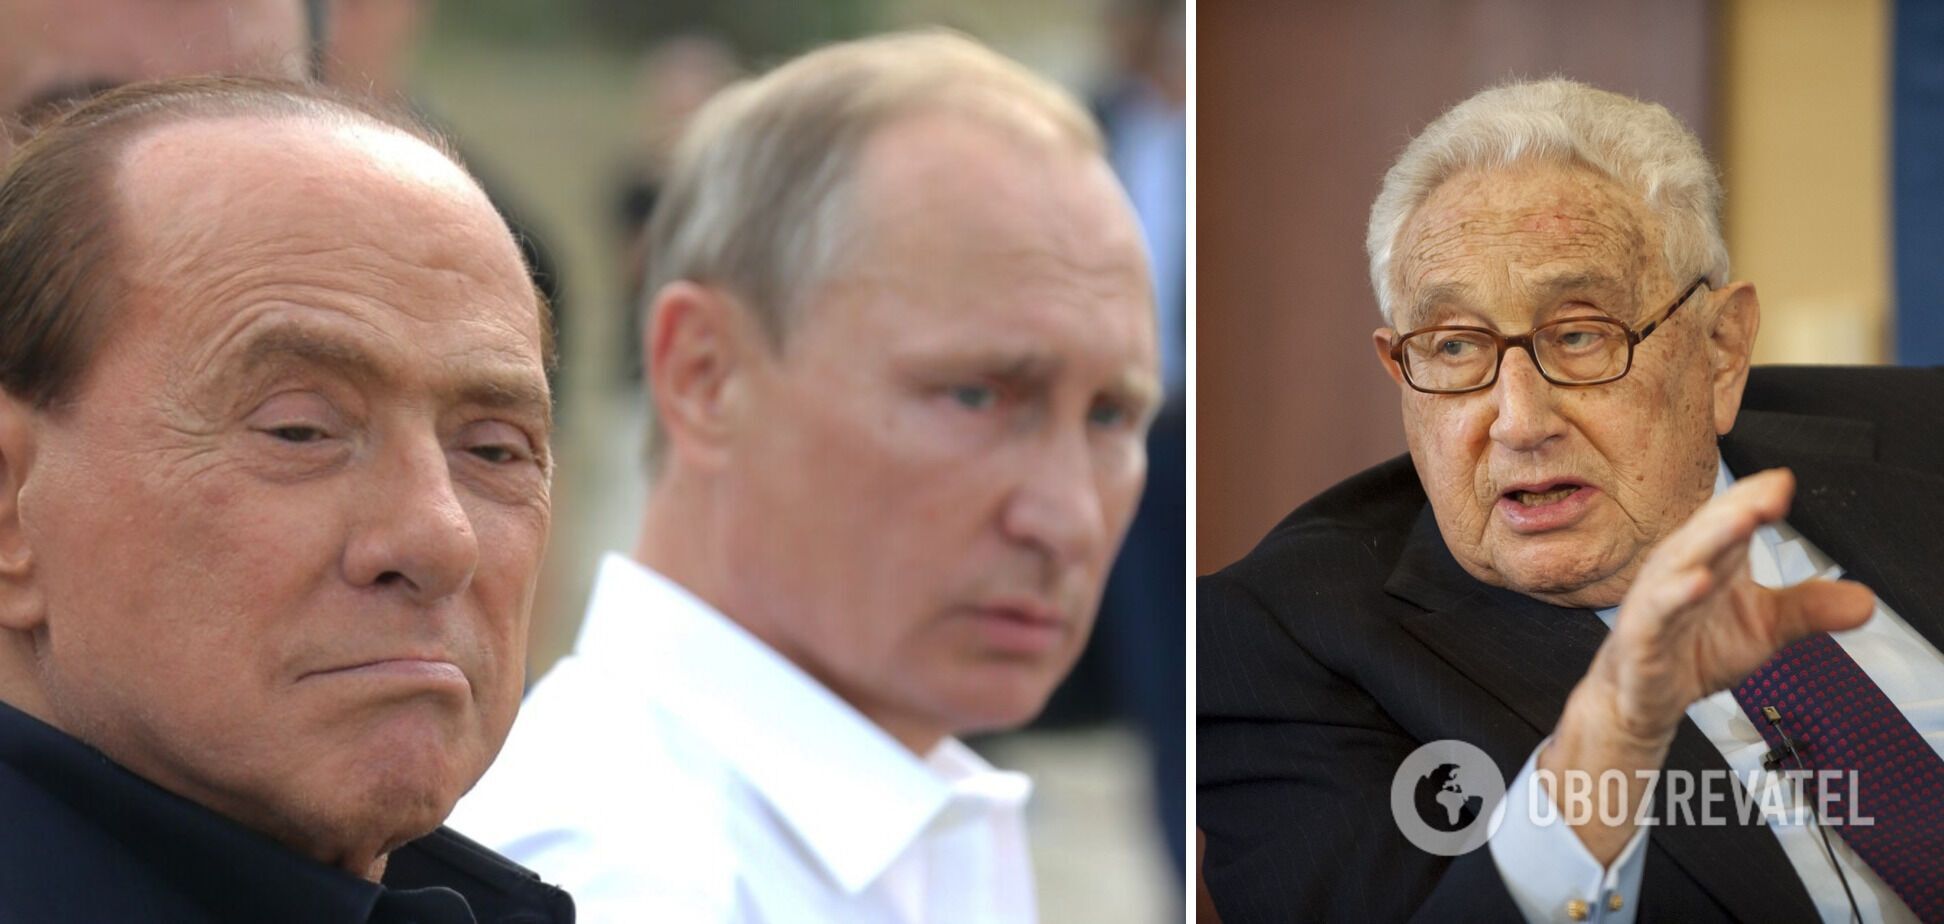 Сільвіо Берлусконі та Генрі Кісінджер відстоюють інтереси Кремля